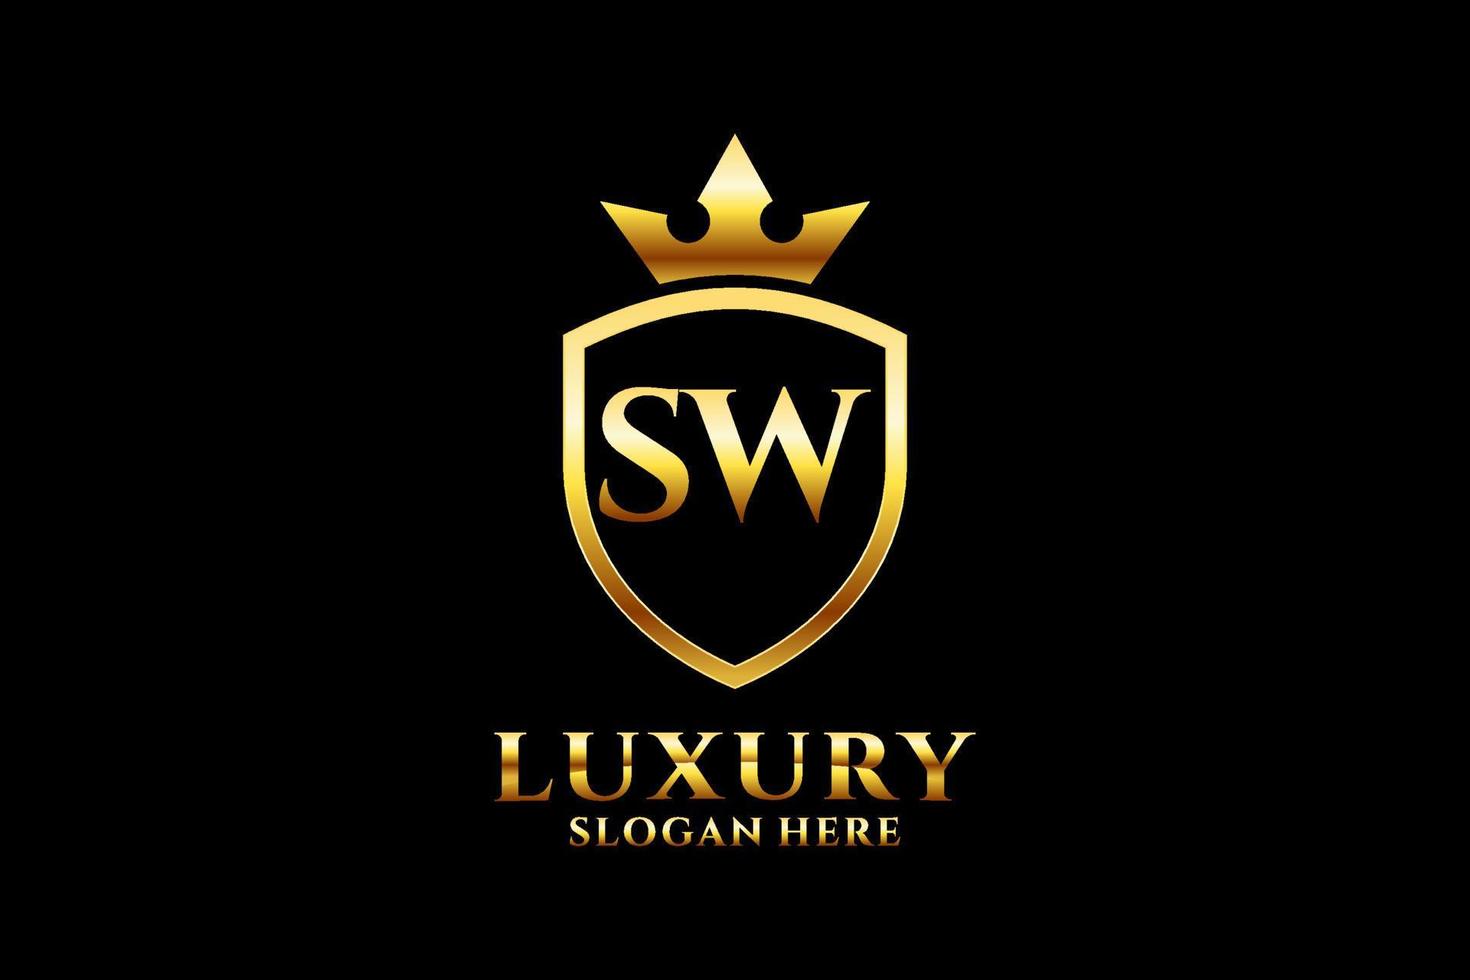 logo monogramme de luxe élégant initial sw ou modèle de badge avec volutes et couronne royale - parfait pour les projets de marque de luxe vecteur